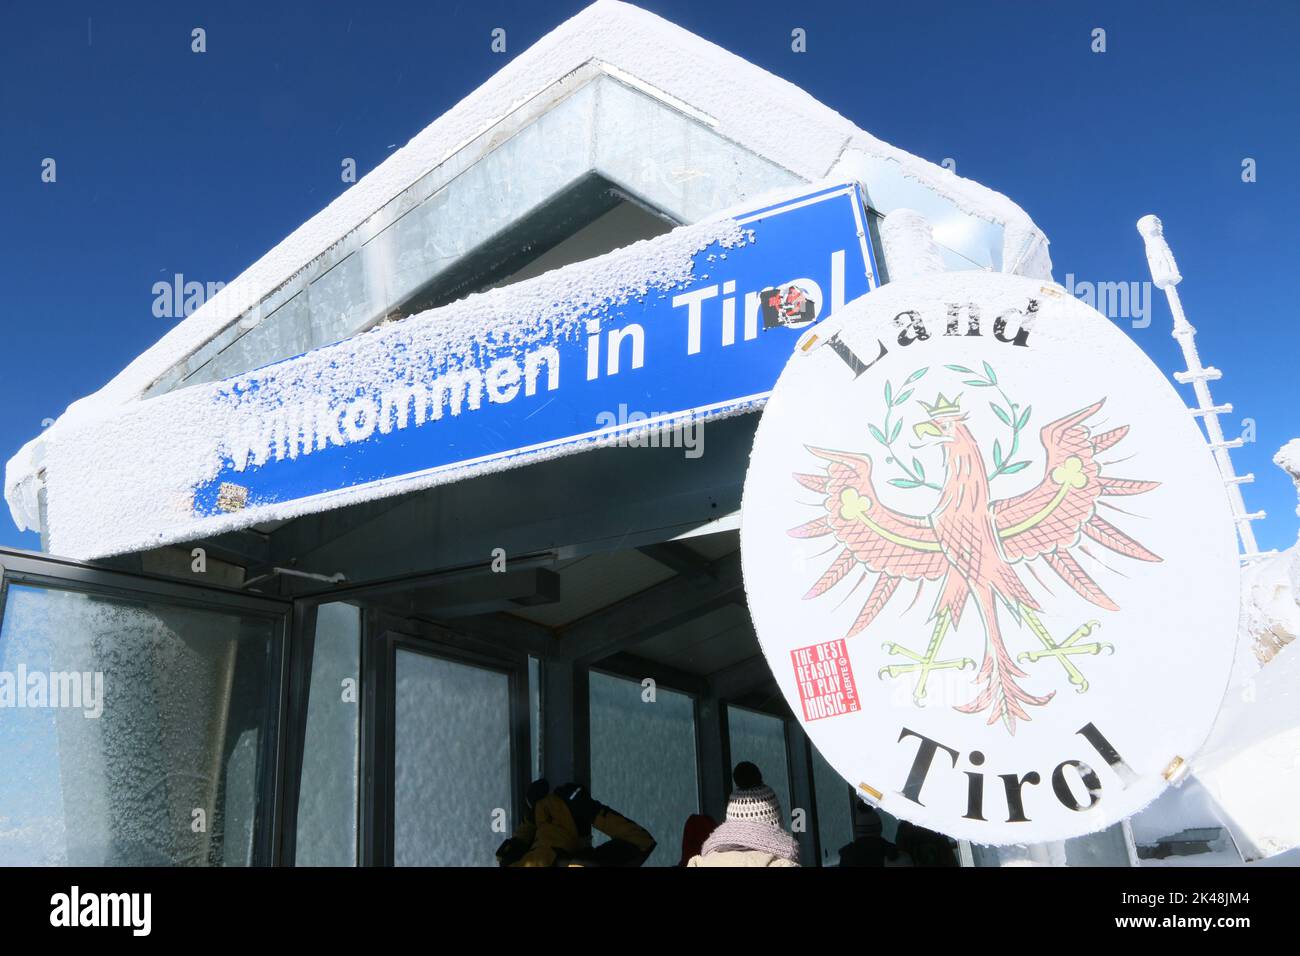 Auf der Zugspitze verläuft die Grenze zwischen Deutschland und Österreich, vor allem zwischen dem Freistaat Bayern und dem Land Tirol. Das Schild für den Freistadt ist schneebedeckt, einige Besucher betrachten das Wappen. Stock Photo